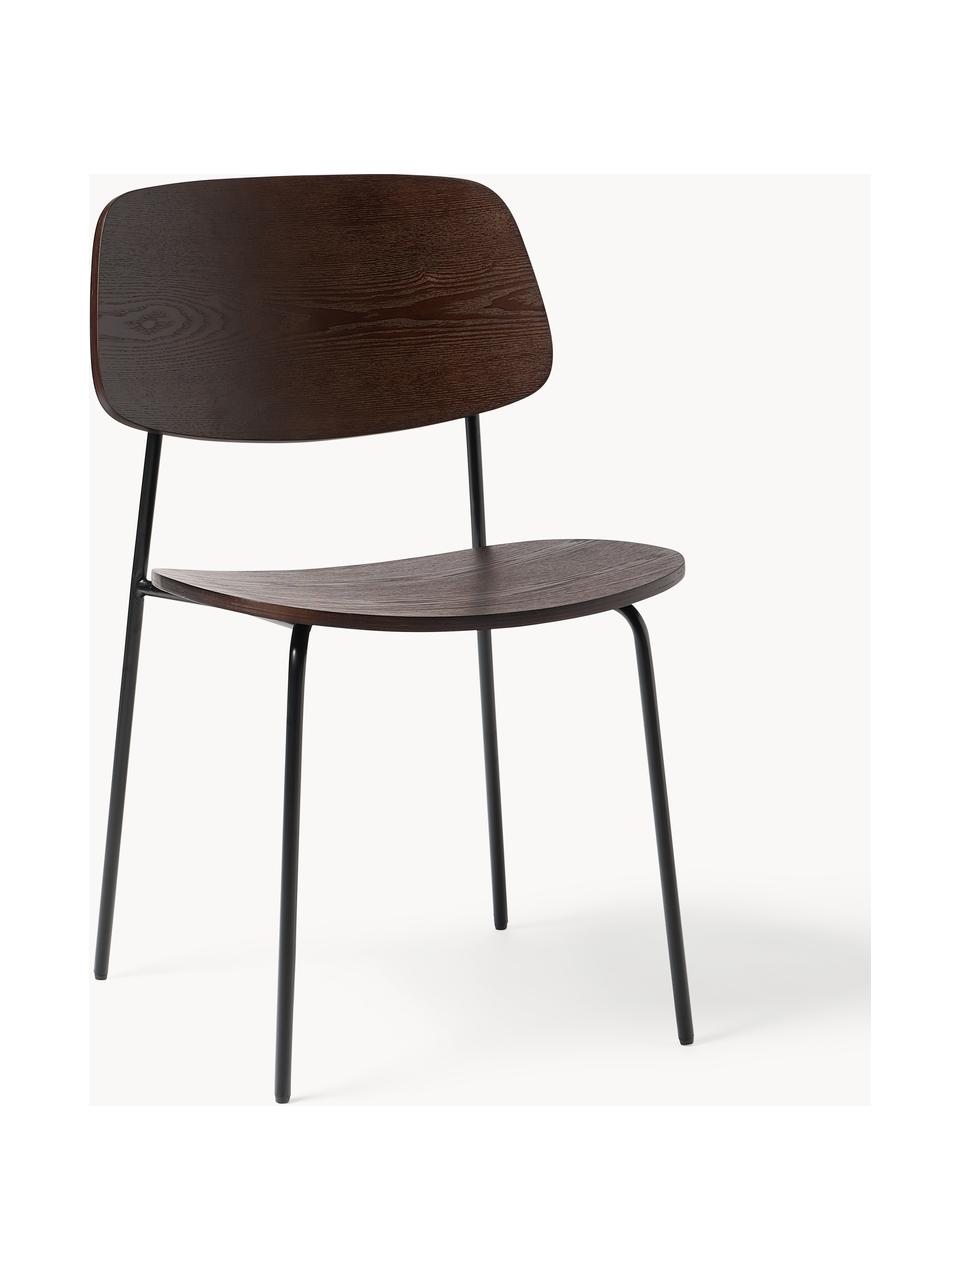 Holzstühle Nadja, 2 Stück, Sitzfläche: Sperrholz mit Eschenholzf, Beine: Metall, pulverbeschichtet, Dunkles Holz, B 50 x T 53 cm